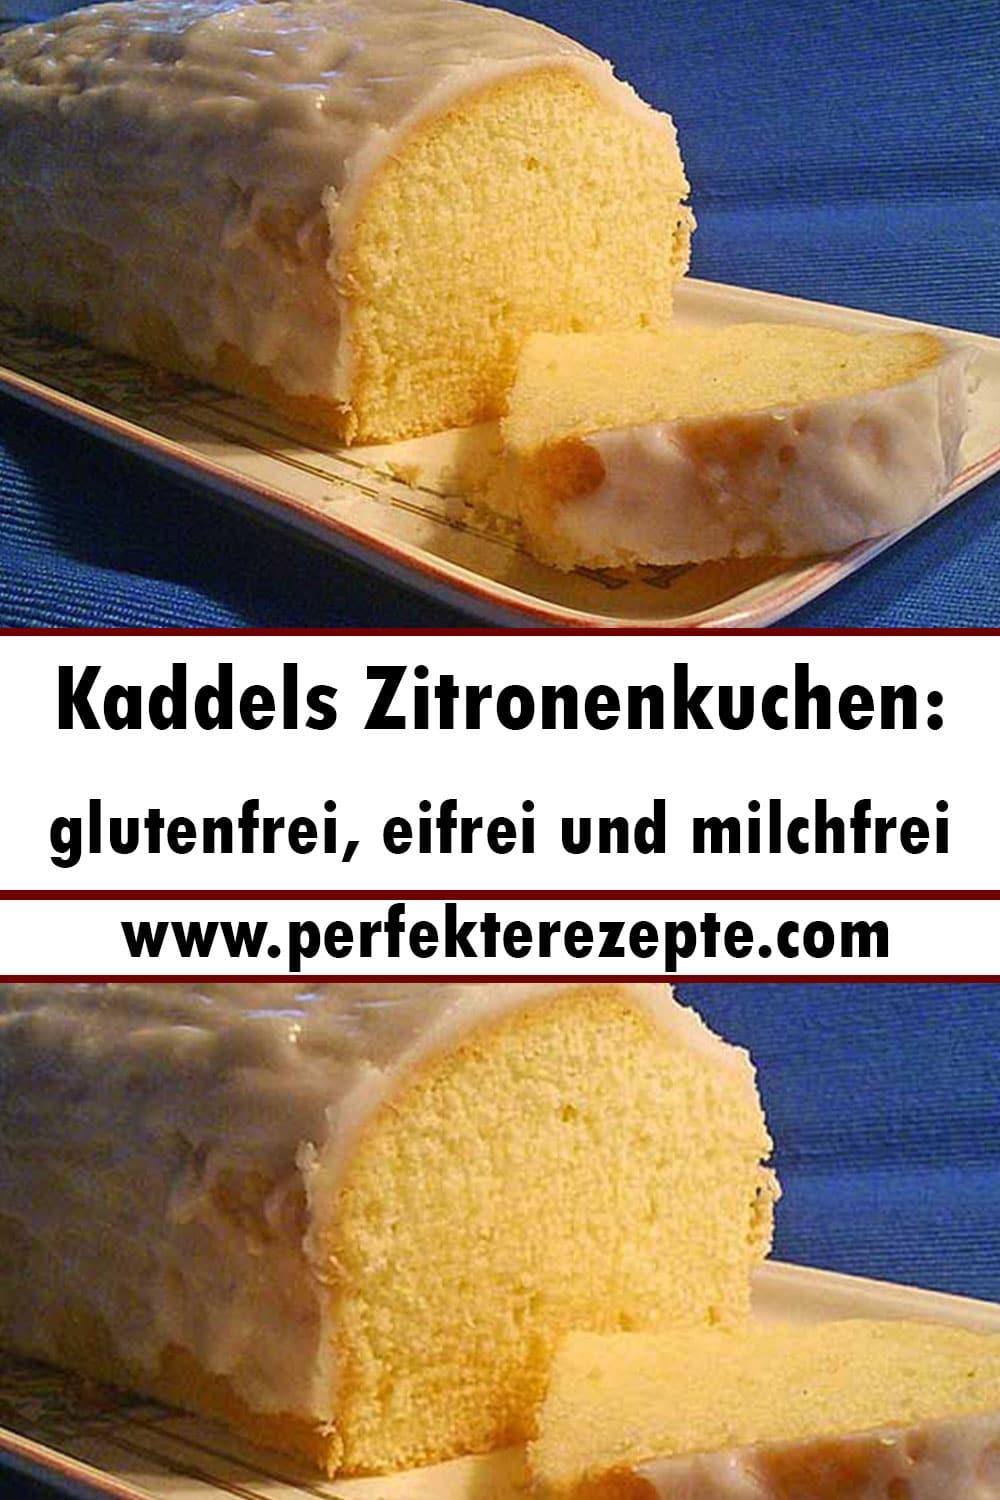 Kaddels Zitronenkuchen Rezept: glutenfrei, eifrei und milchfrei